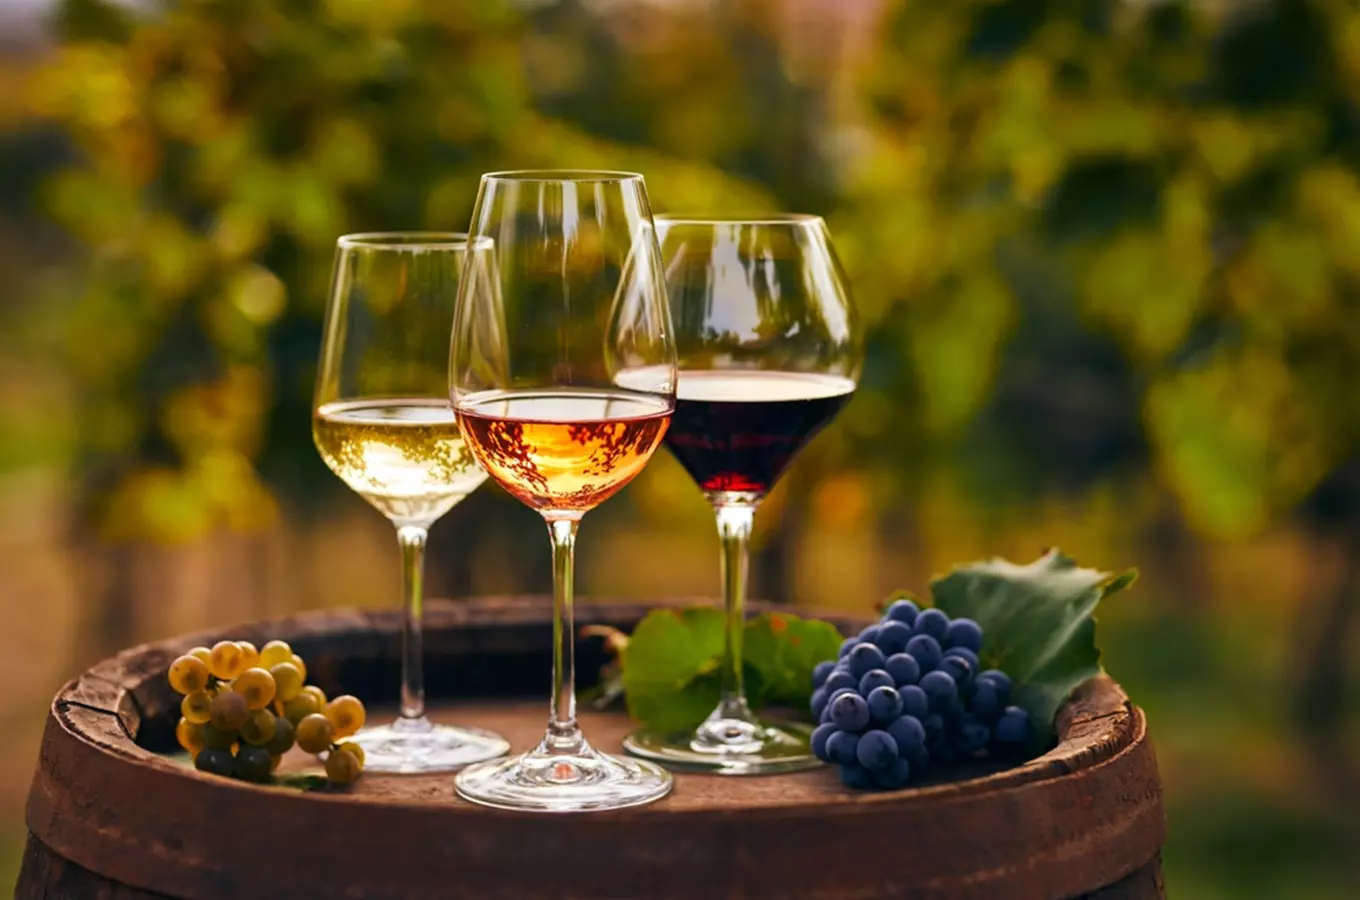 Letní slavnost autentických vín